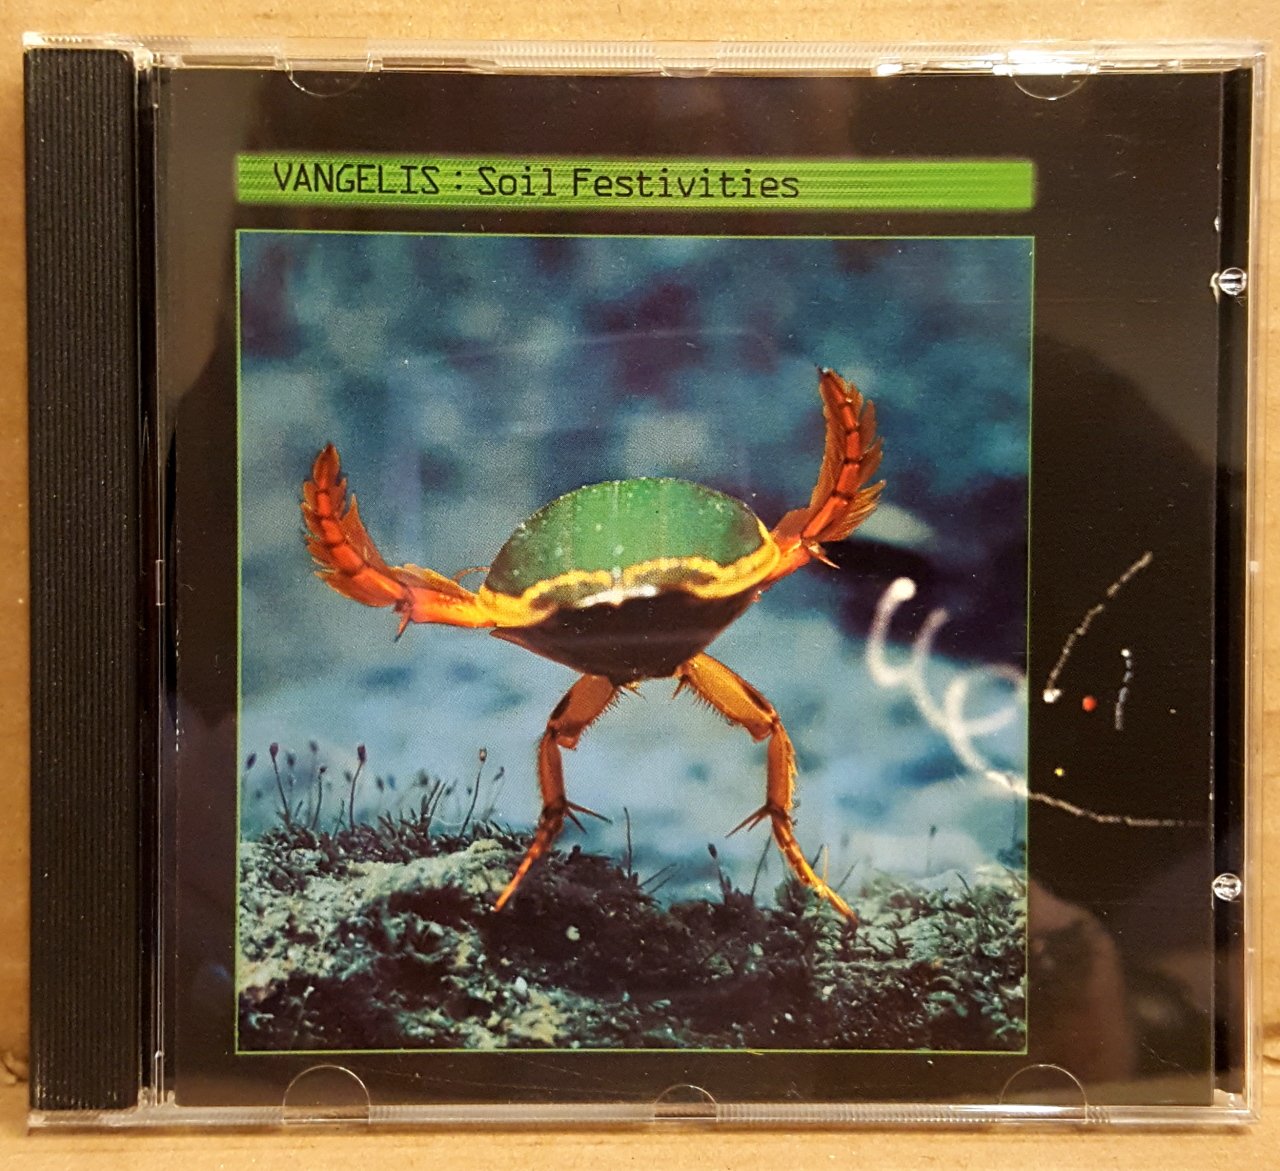 VANGELIS - SOIL FESTIVITIES (1984) - CD NEW AGE / AMBIENT 2.EL